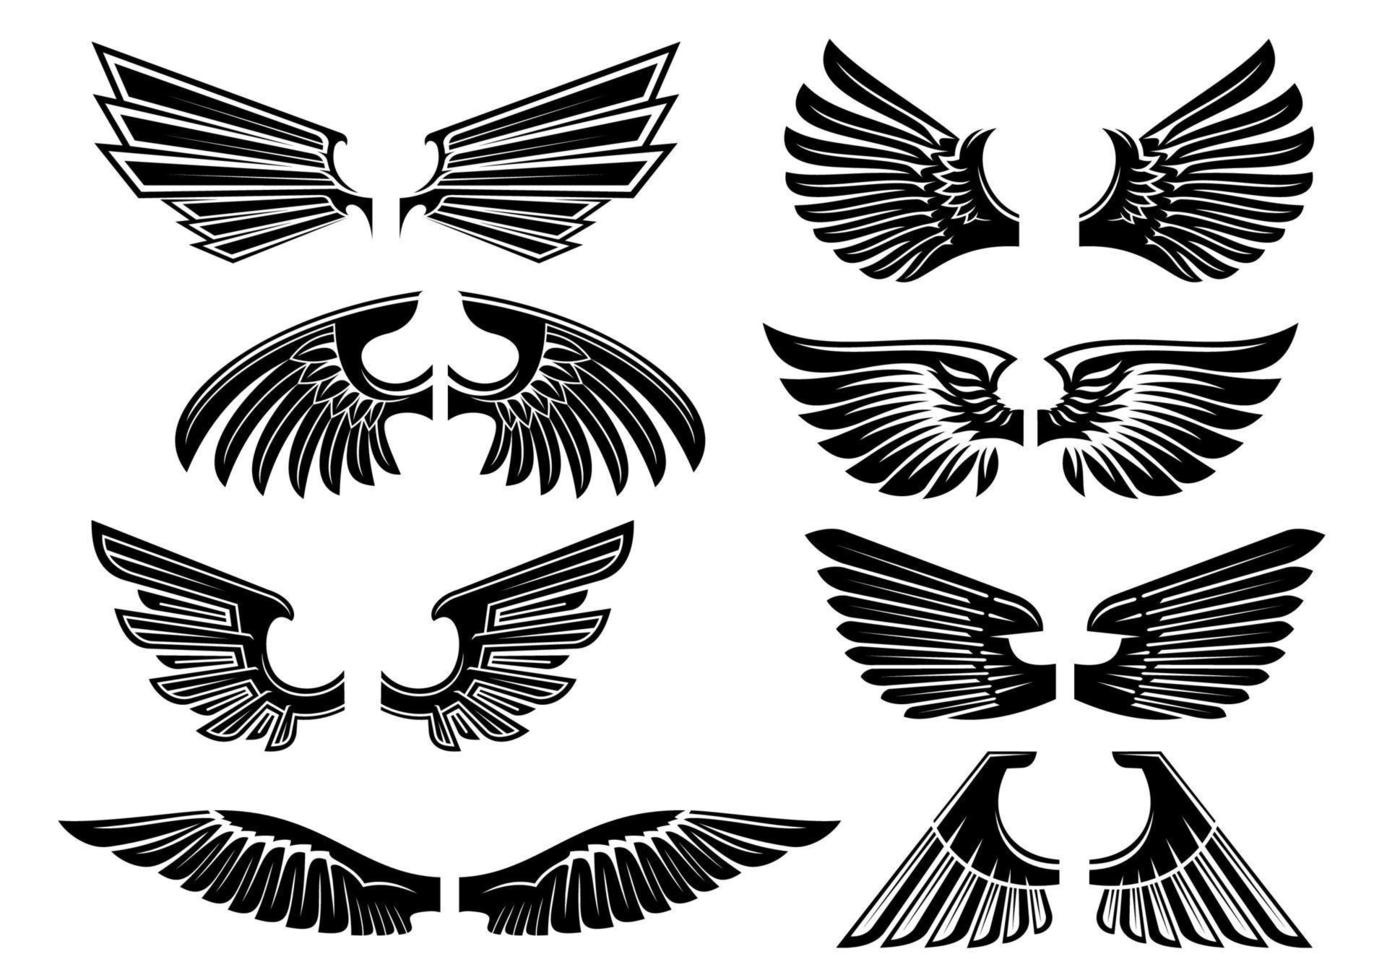 asas de anjo tribal para heráldica ou desenho de tatuagem vetor